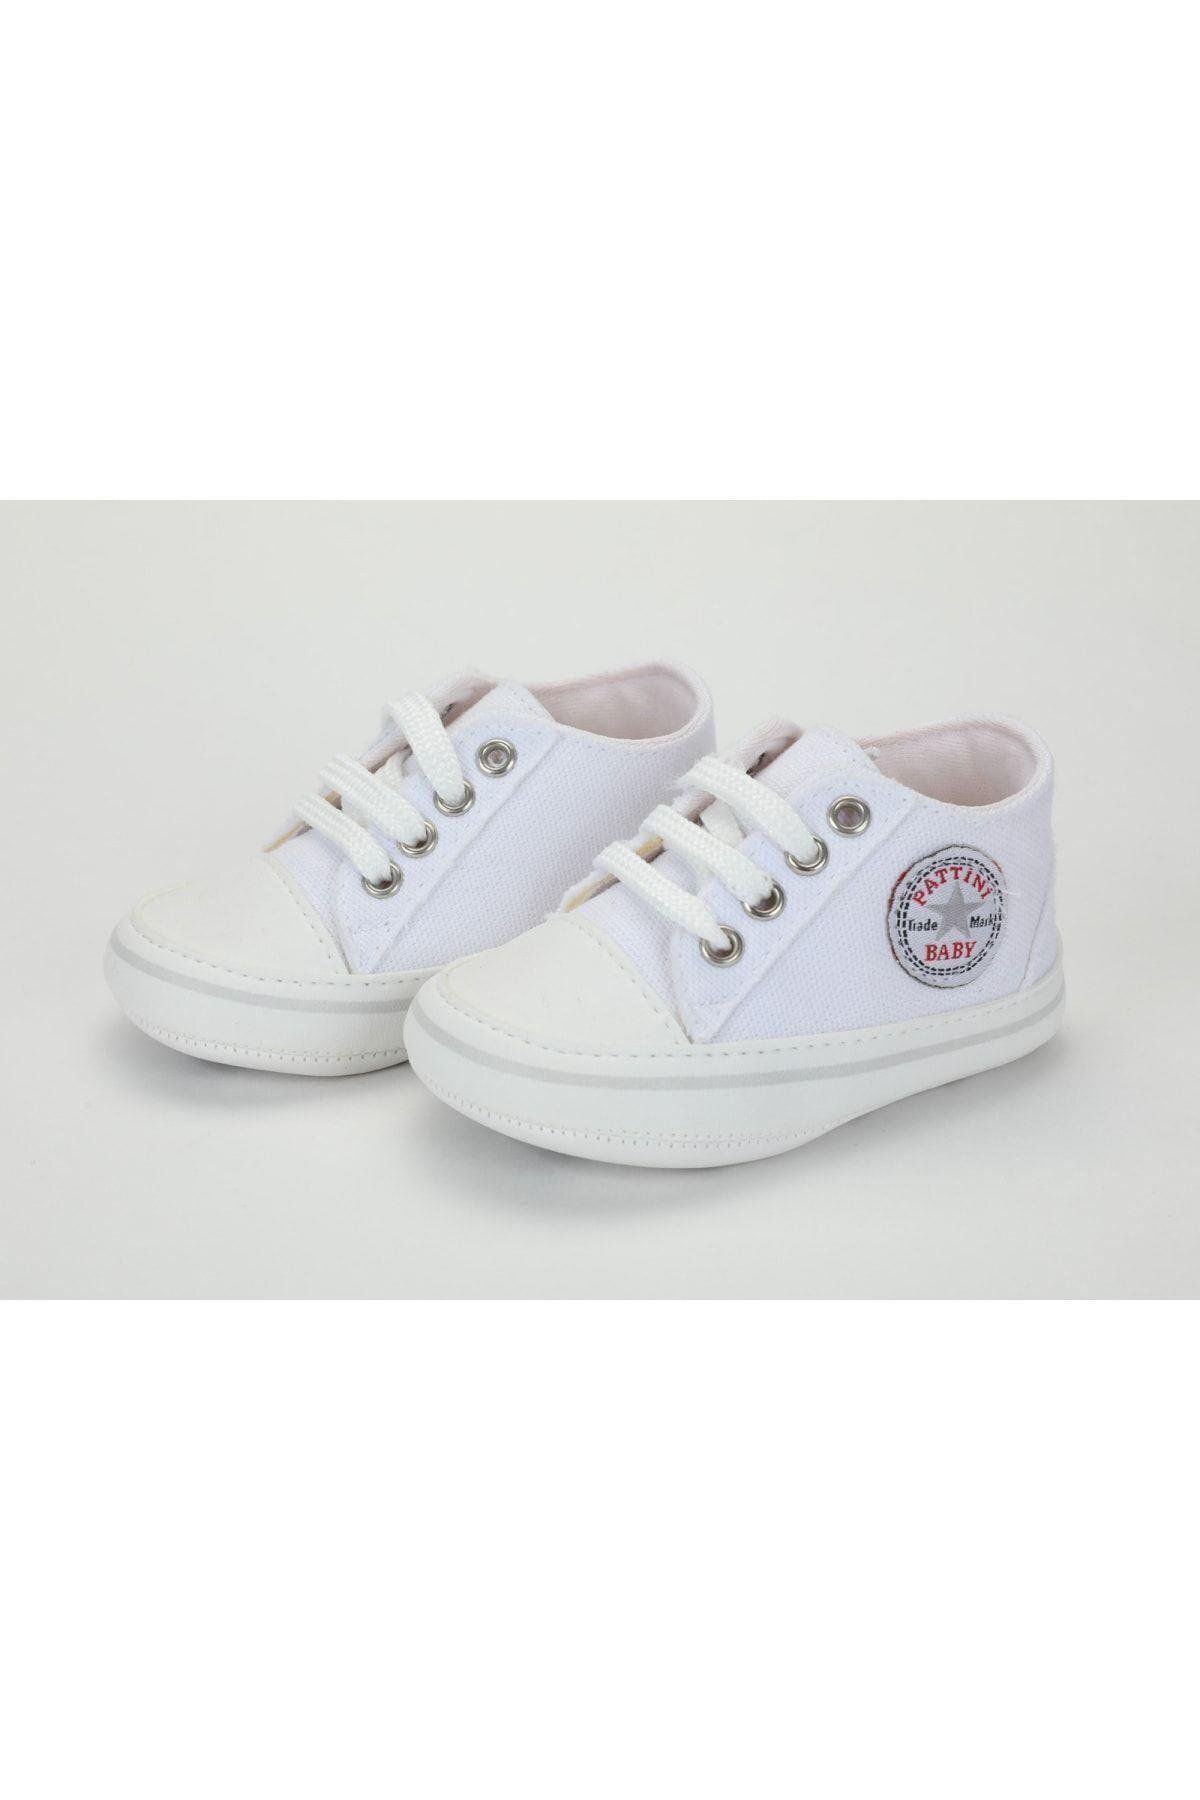 Baby Pattini Unisex Bebek Beyaz Armalı Ayakkabı - Patik Beyaz